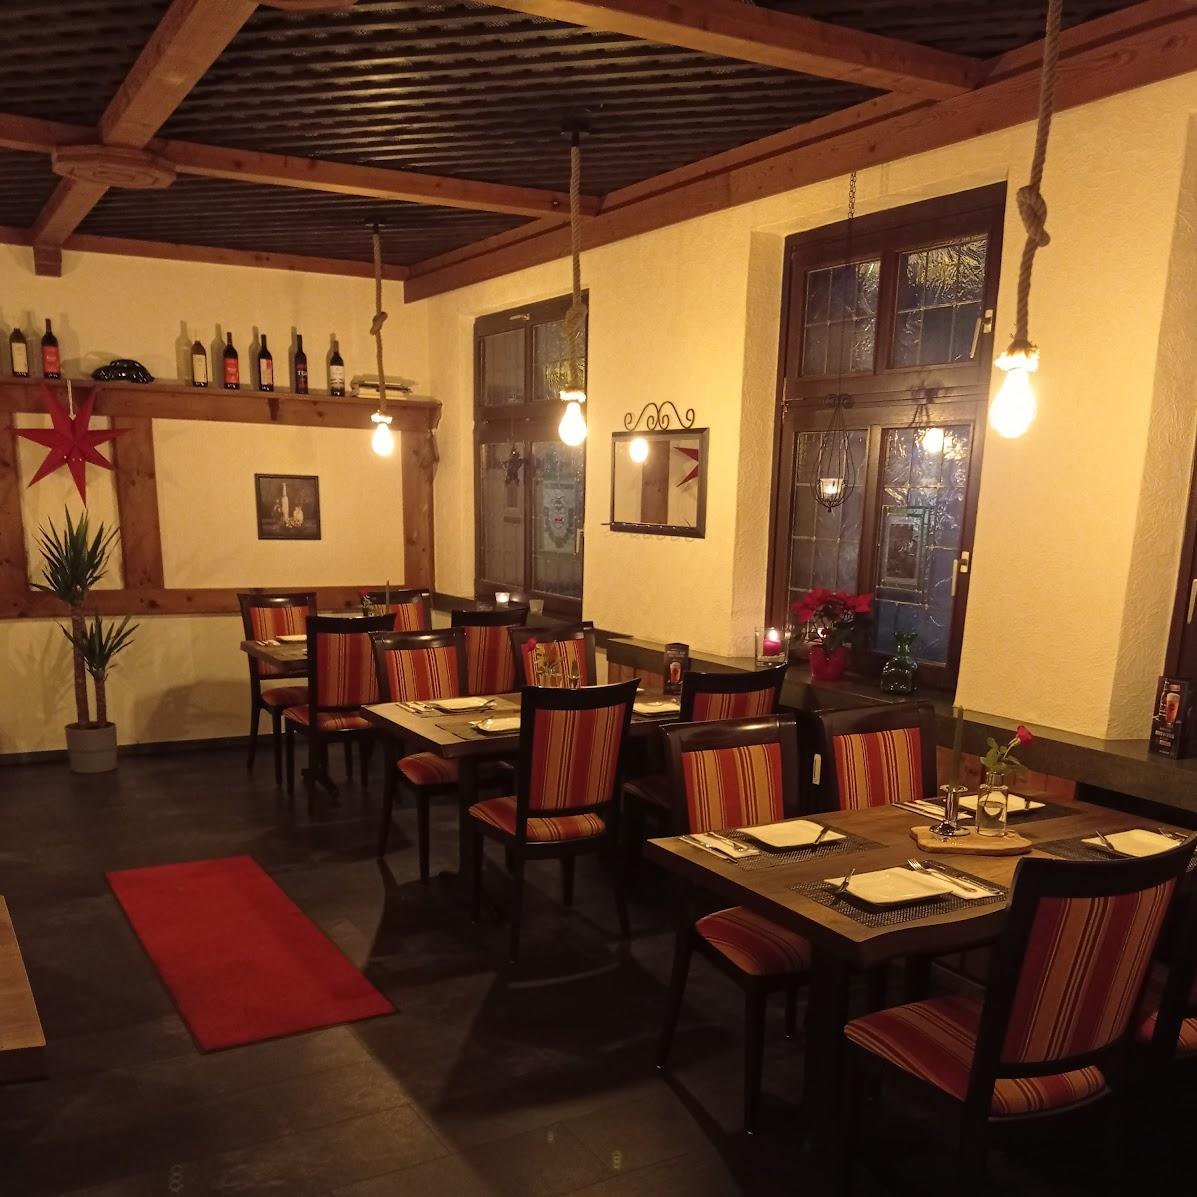 Restaurant "Restaurant Bei Carlos" in Radevormwald